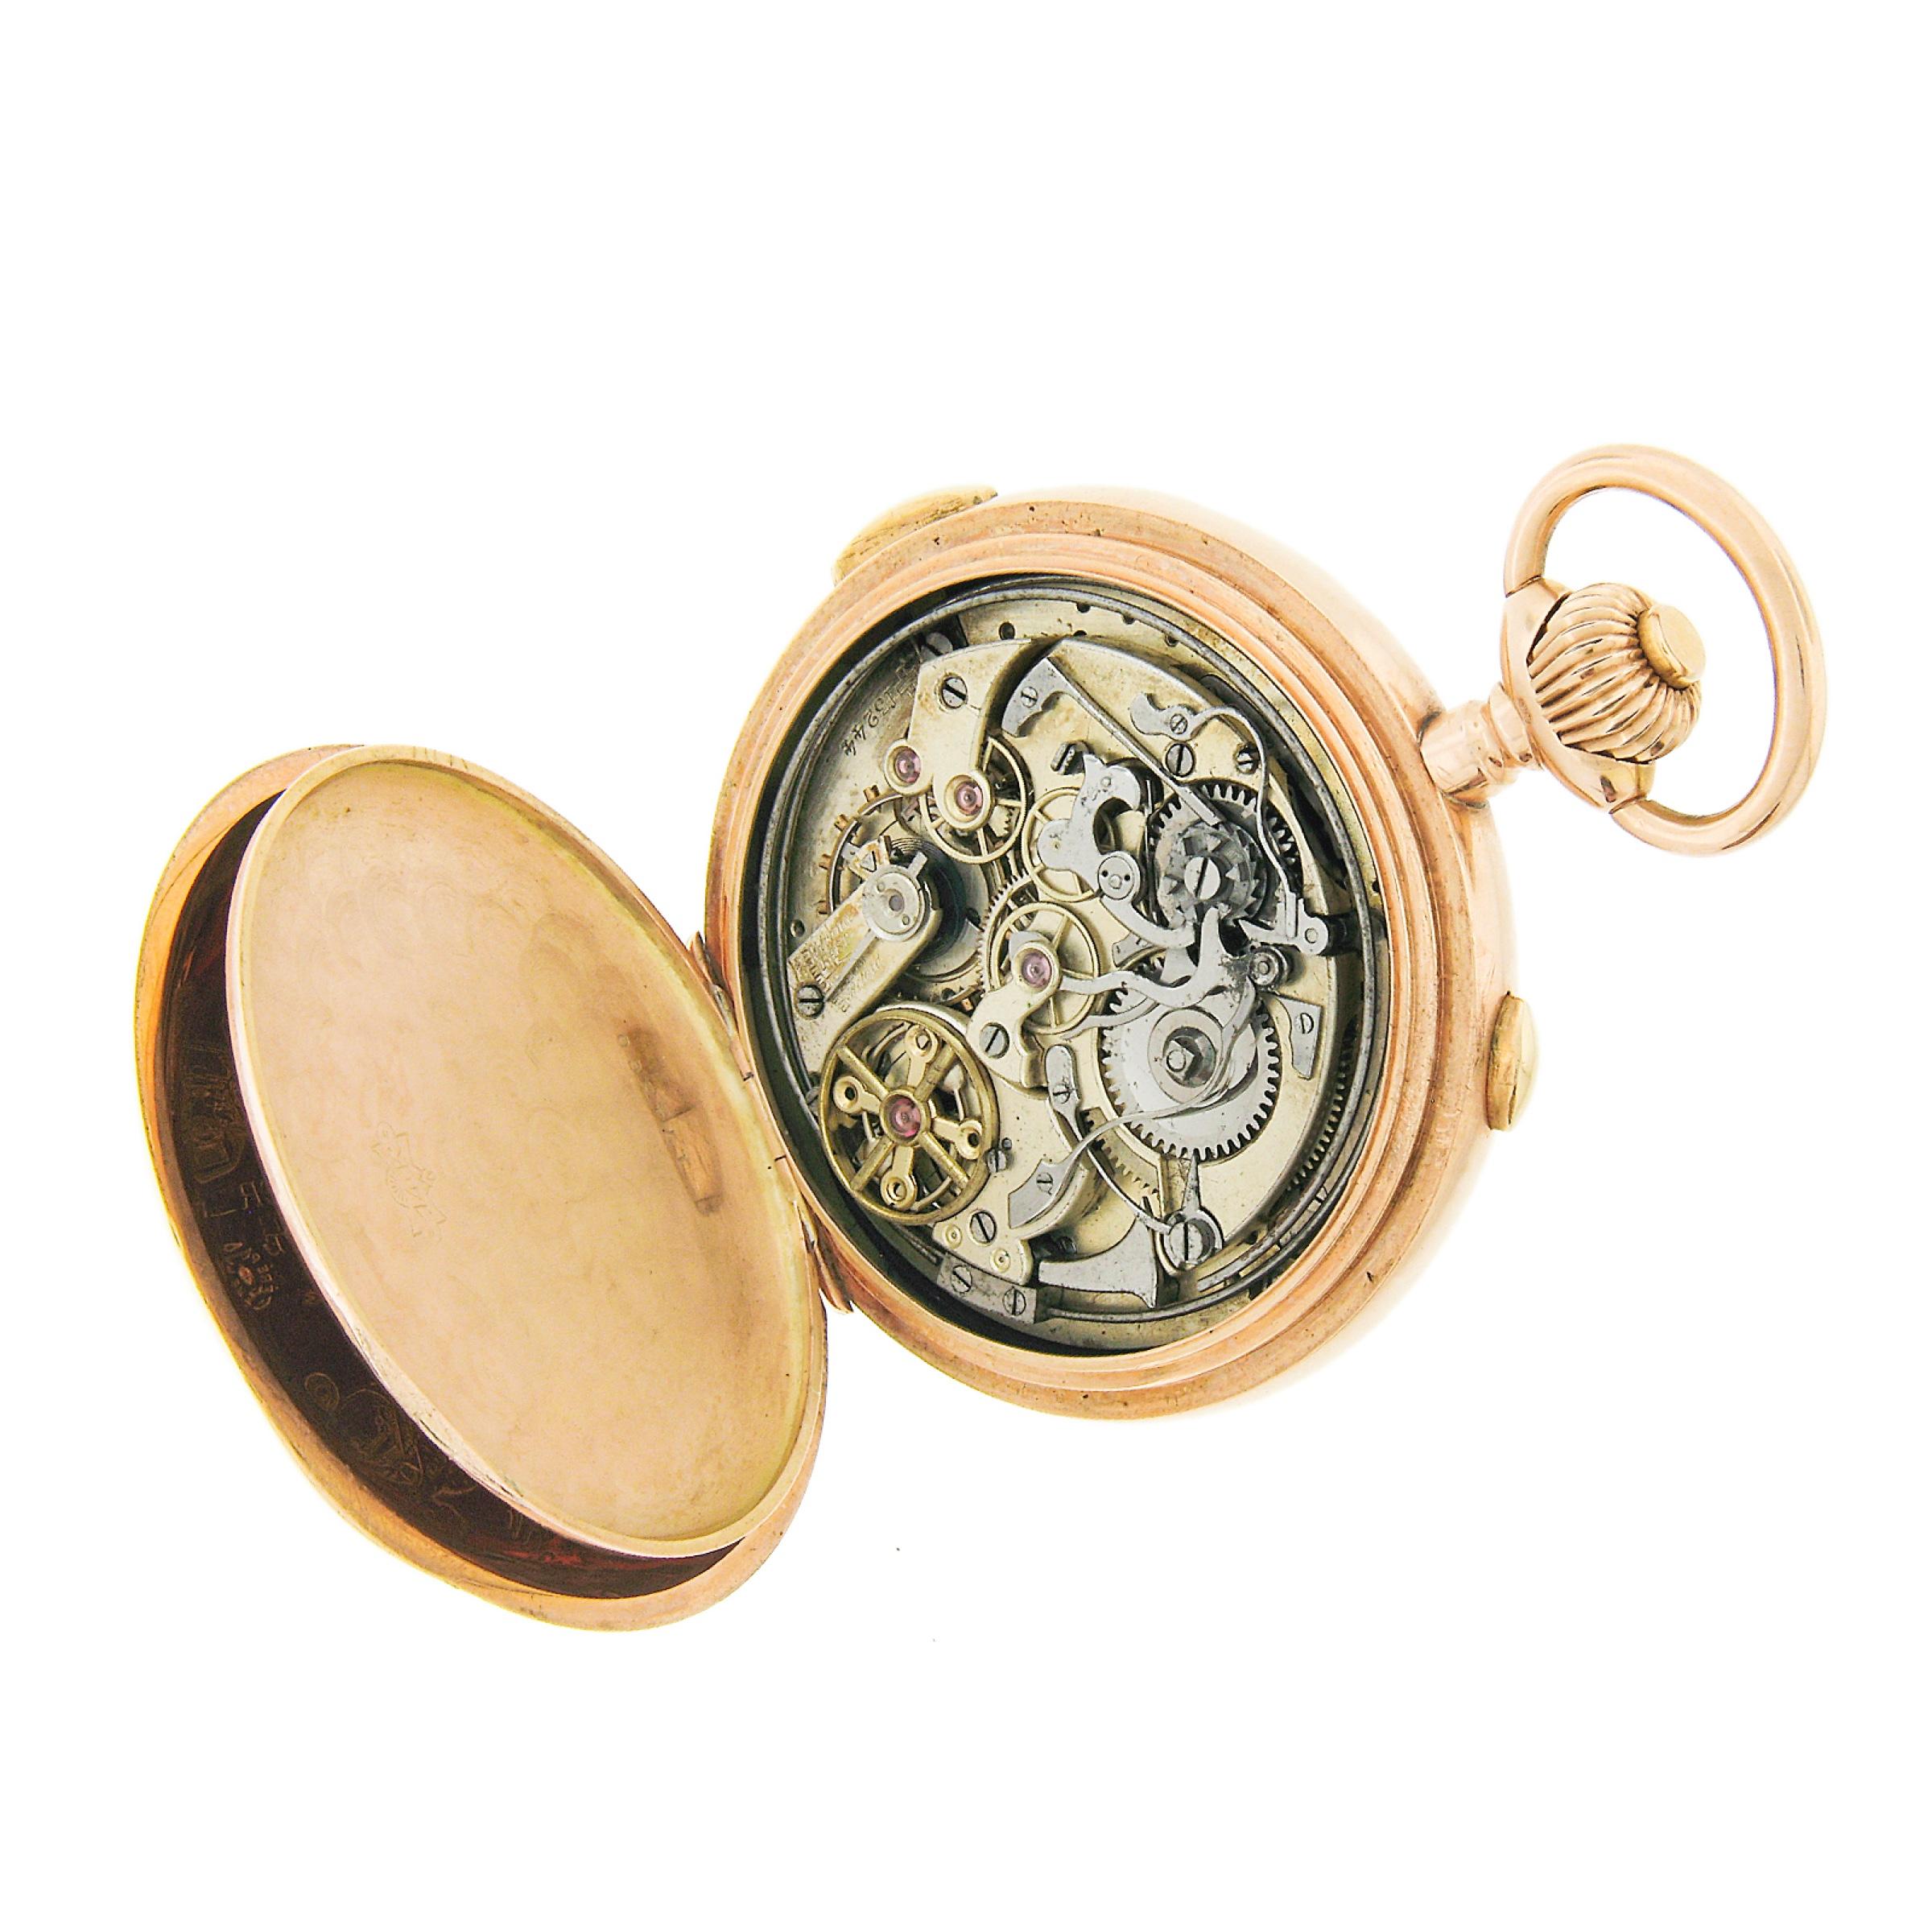 Diese angesengte antike Taschenuhr von Audemars Freres verf�ügt über ein vergoldetes Hebelwerk mit 1/4-Stunden-Repetition, das durch einen Druckknopf aktiviert wird. Weißes Emailzifferblatt mit drei versenkten Hilfszifferblättern für Datum, Mondphase